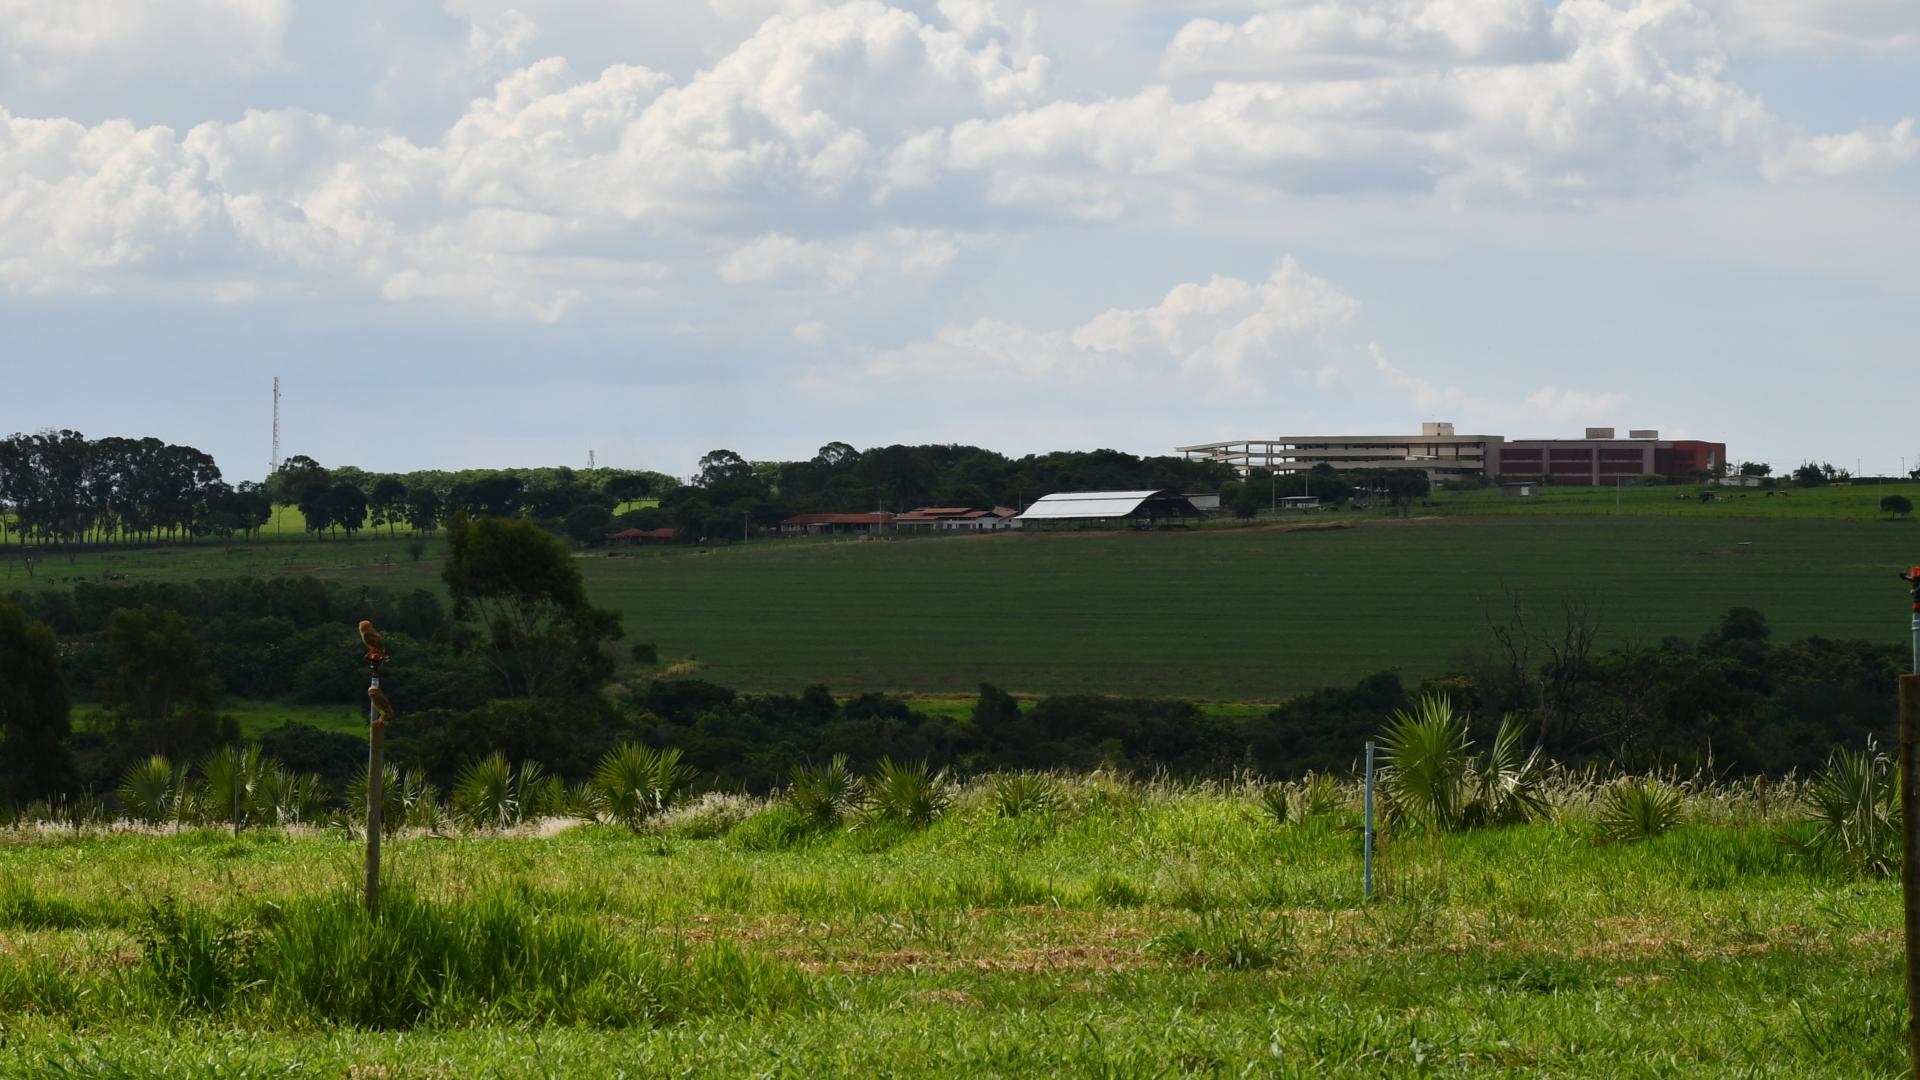 Imagem panorâmica aberta, mostrando parte da Fazenda do Glória